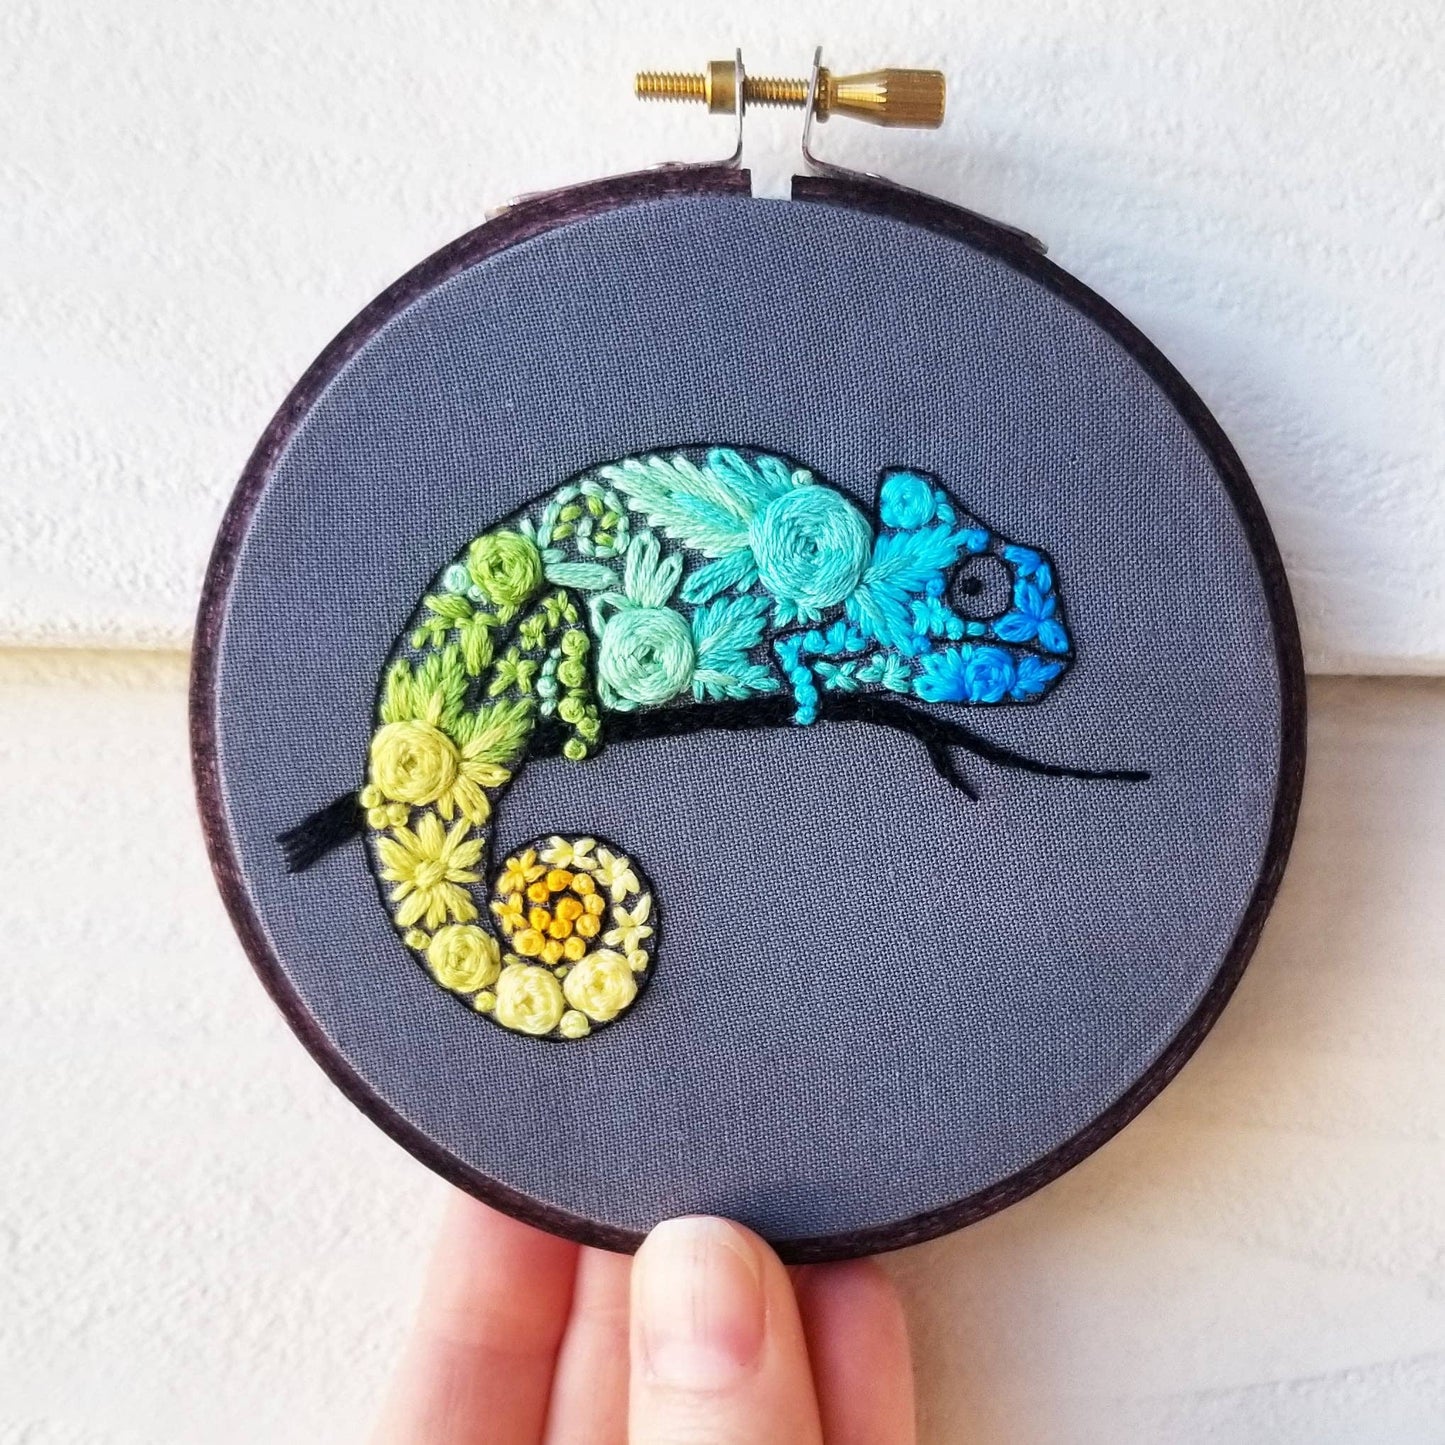 Jessica Long Embroidery - Chameleon Beginner Needlepoint Kit